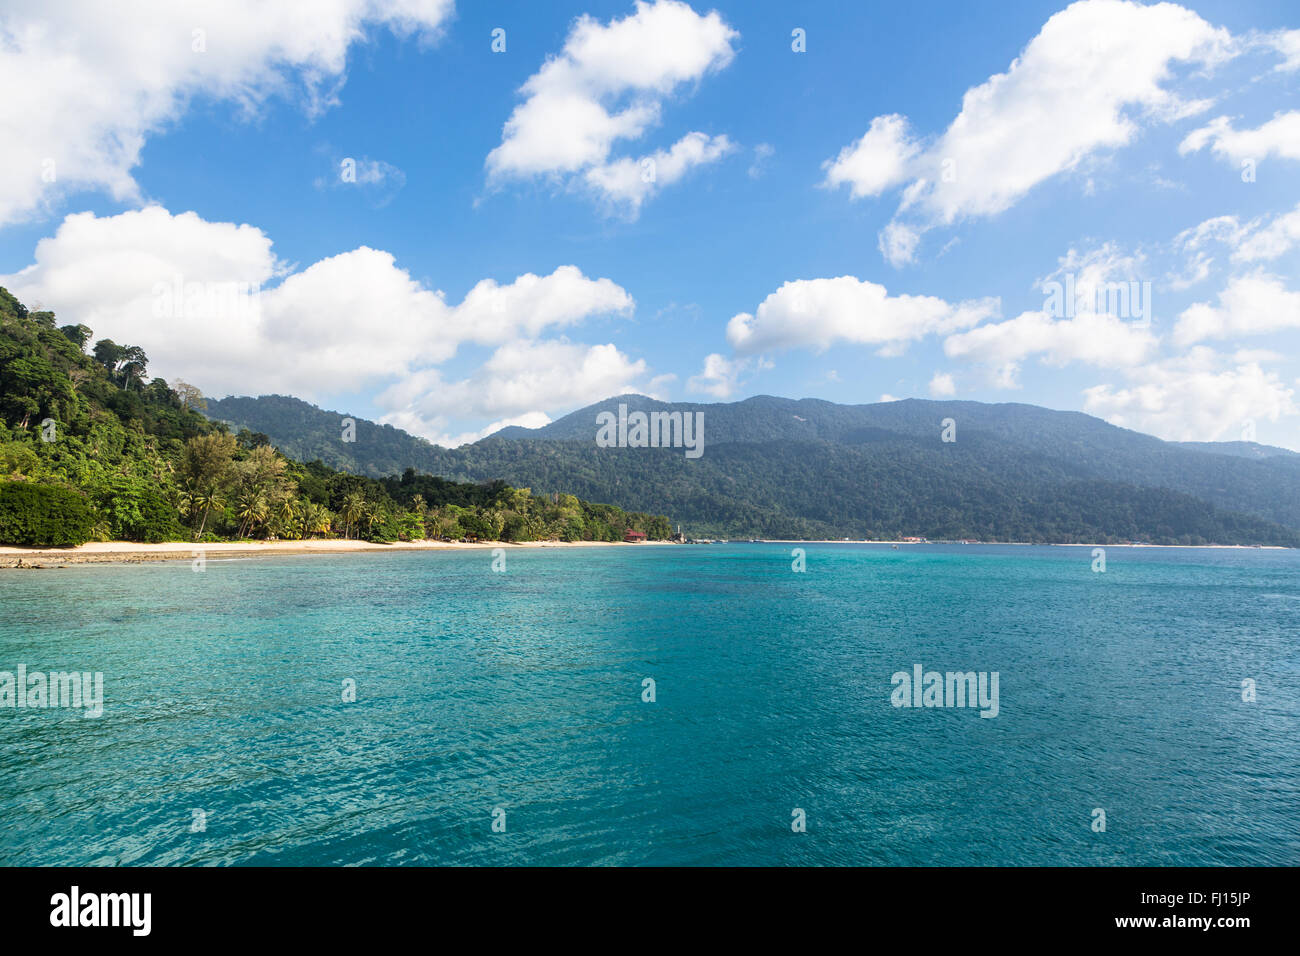 Isola di Tioman è una splendida isola tropicale della costa orientale della penisola malese. Foto Stock